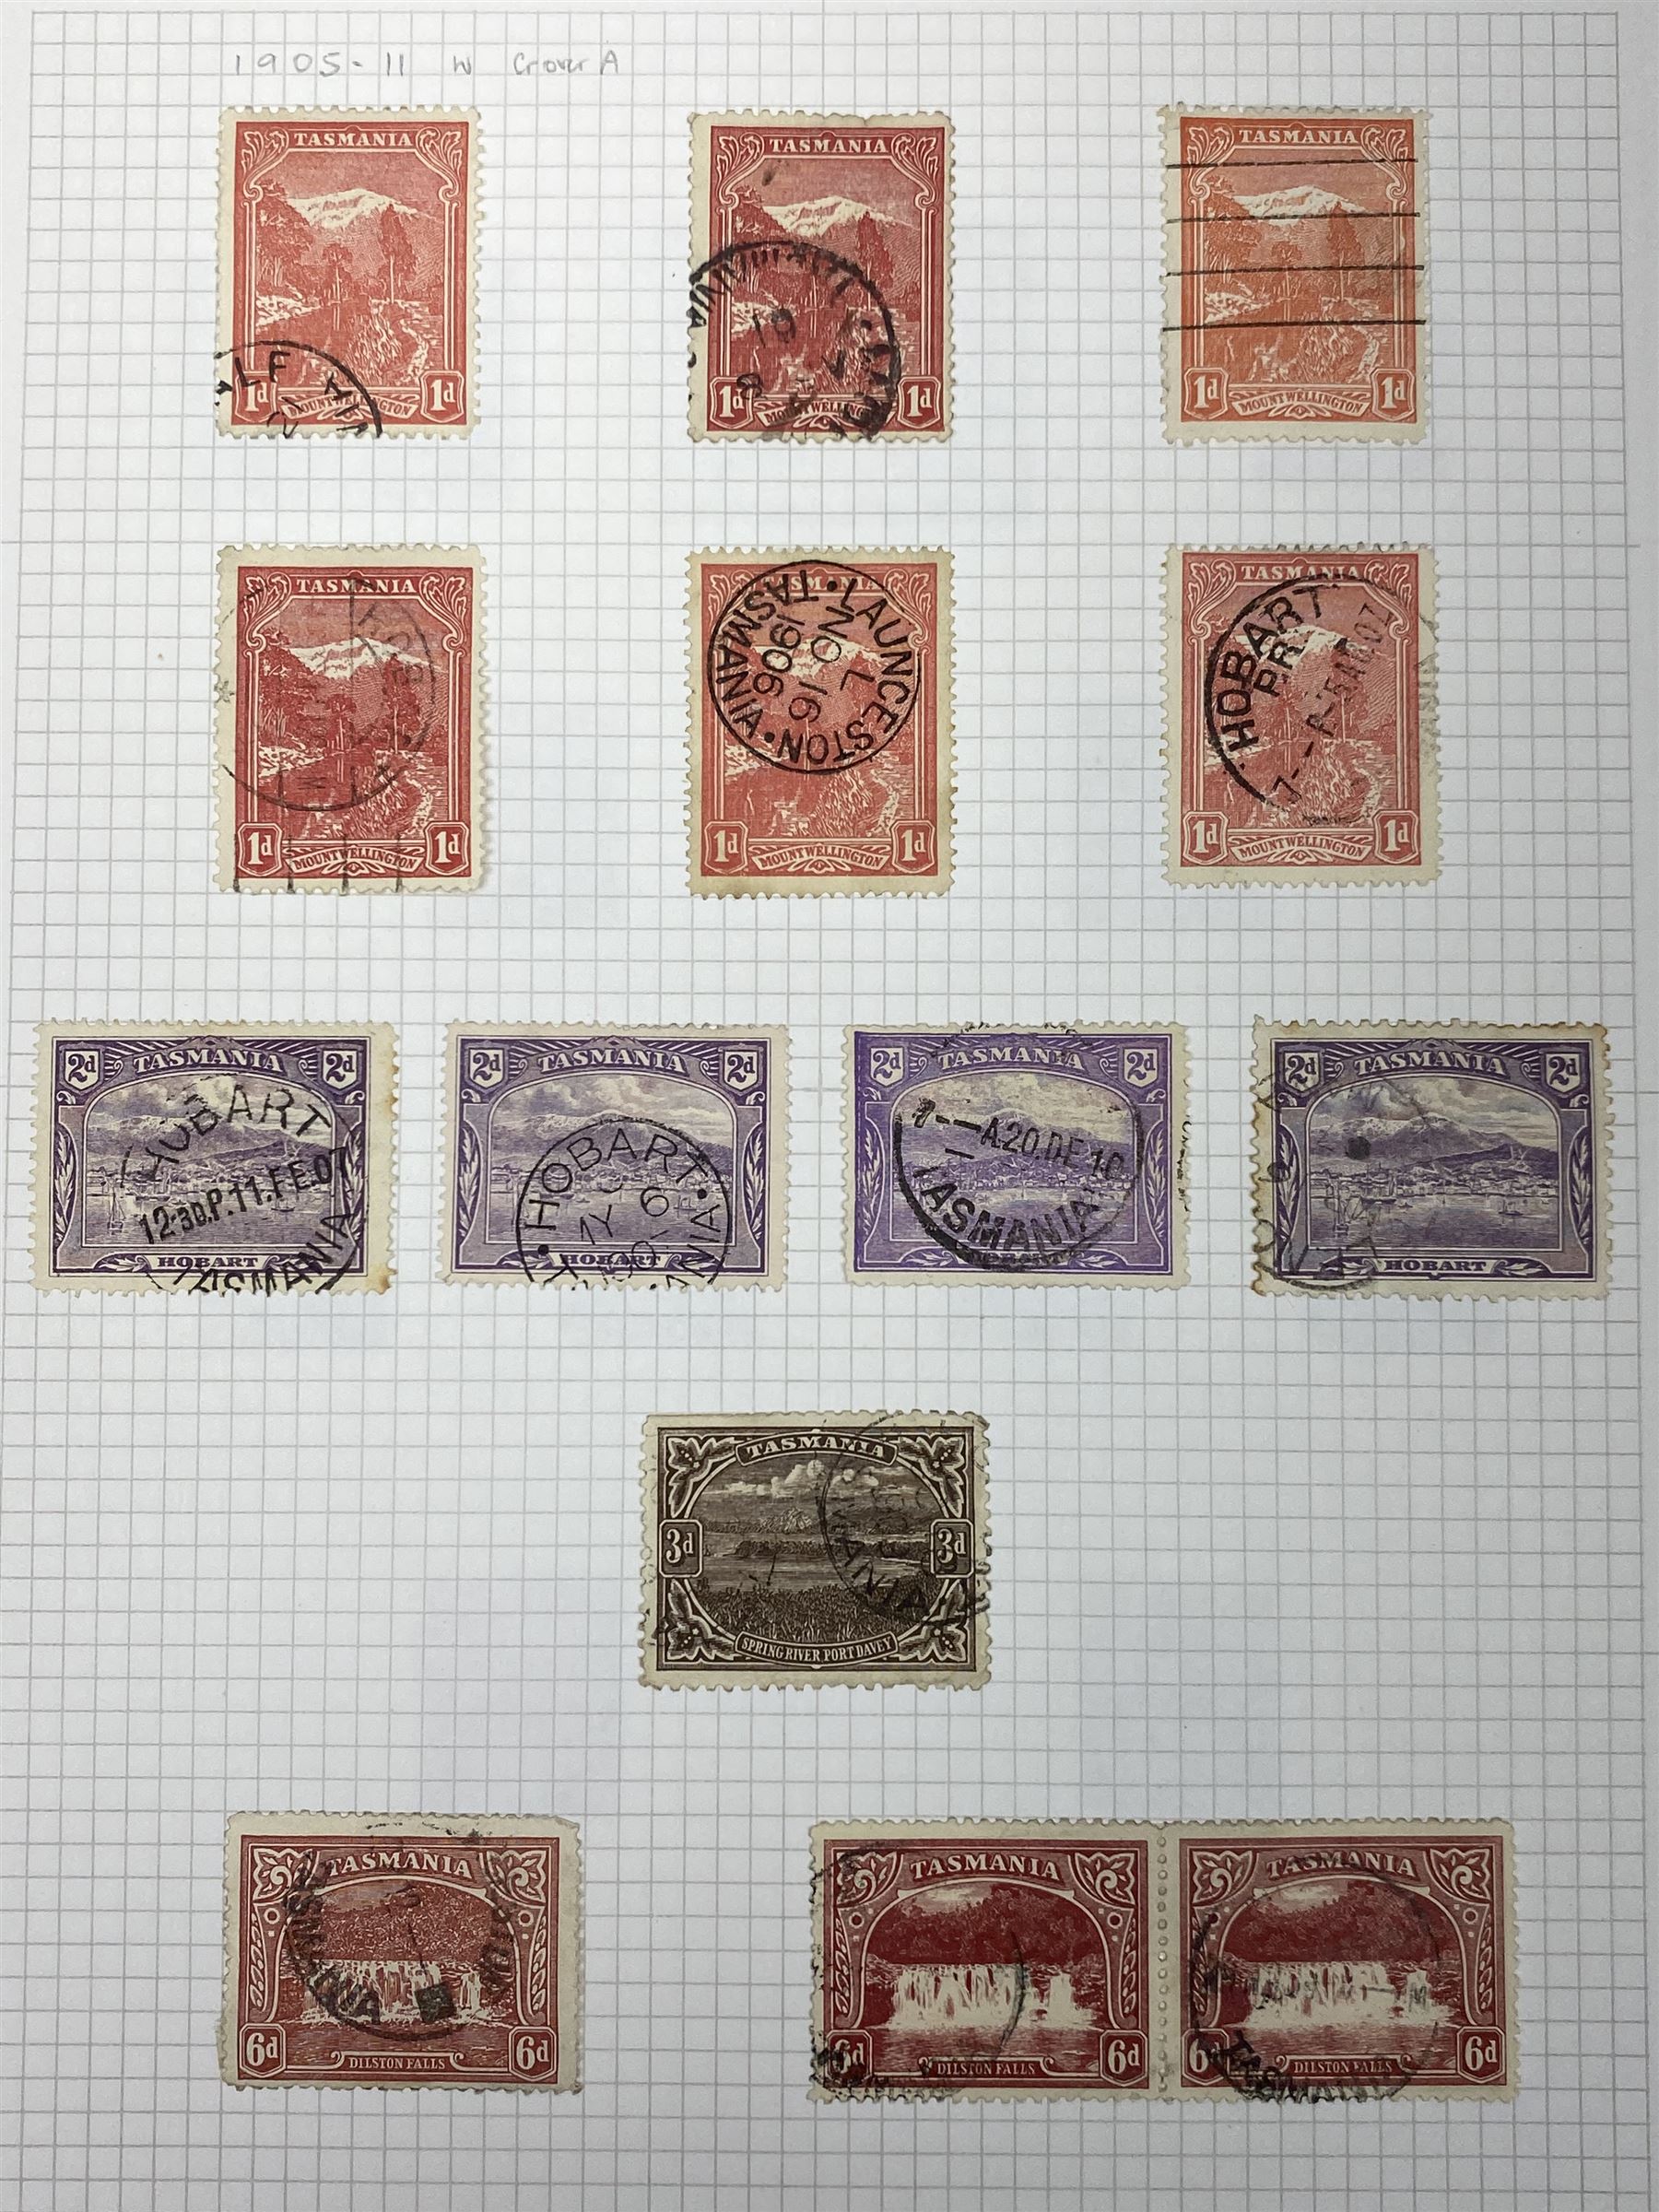 Van Diemen's Land (Tasmania) Queen Victoria and later stamps - Image 13 of 15